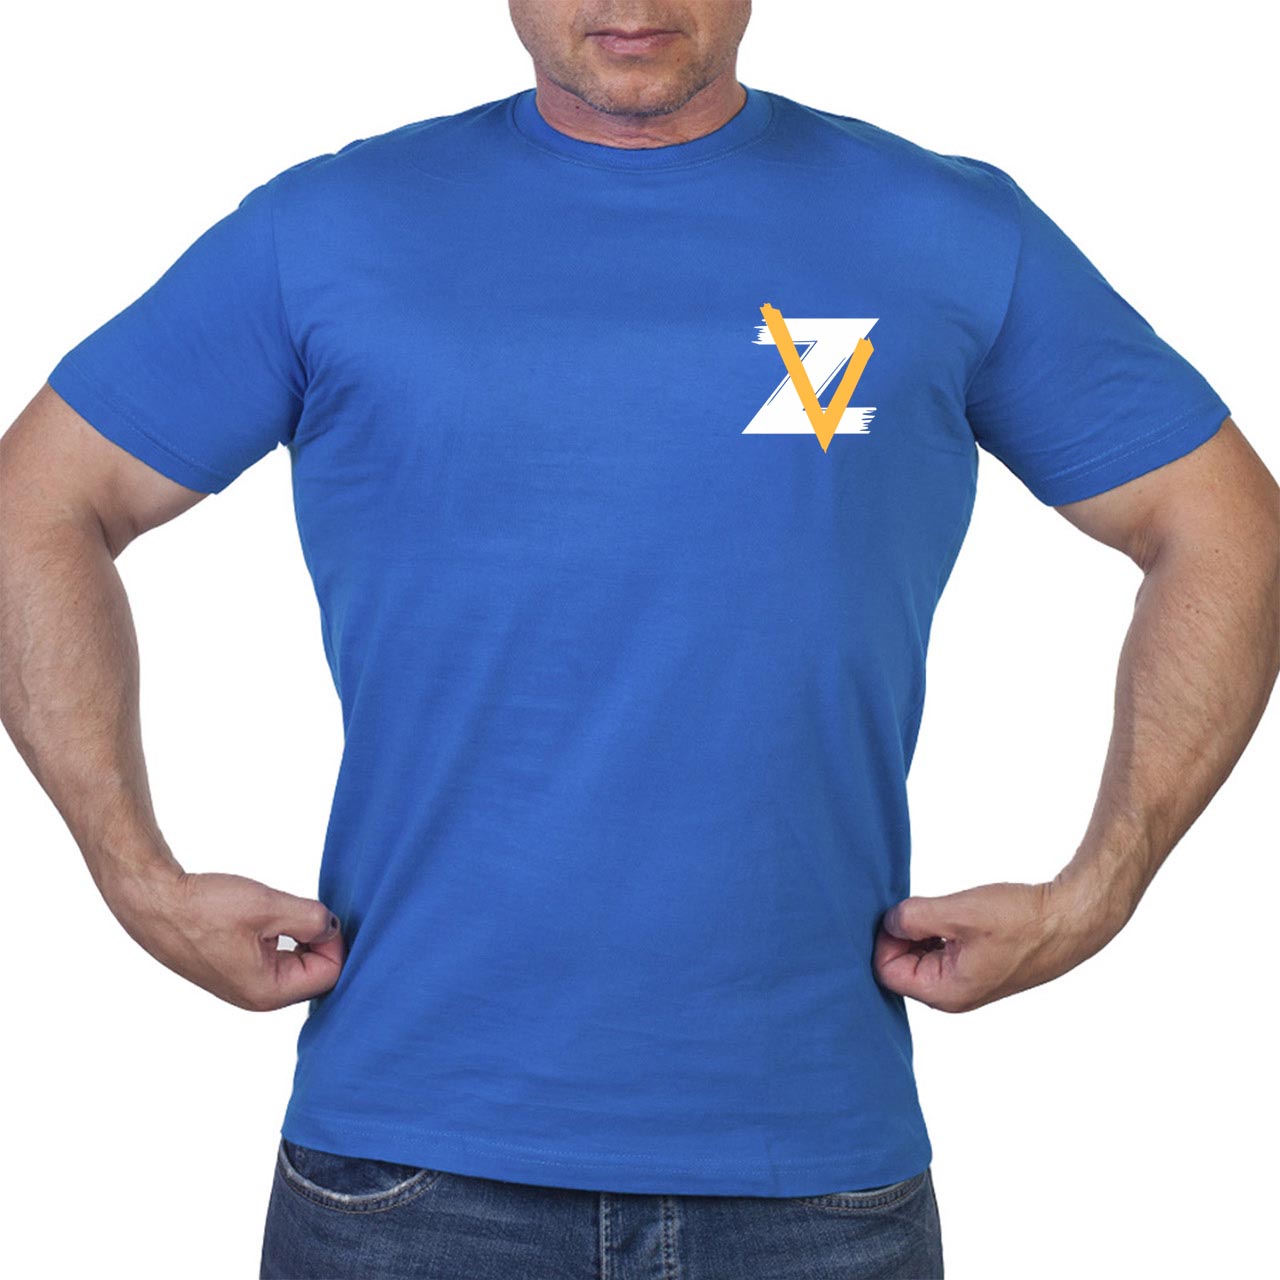 Недорогая футболка с символом военной Операции Z